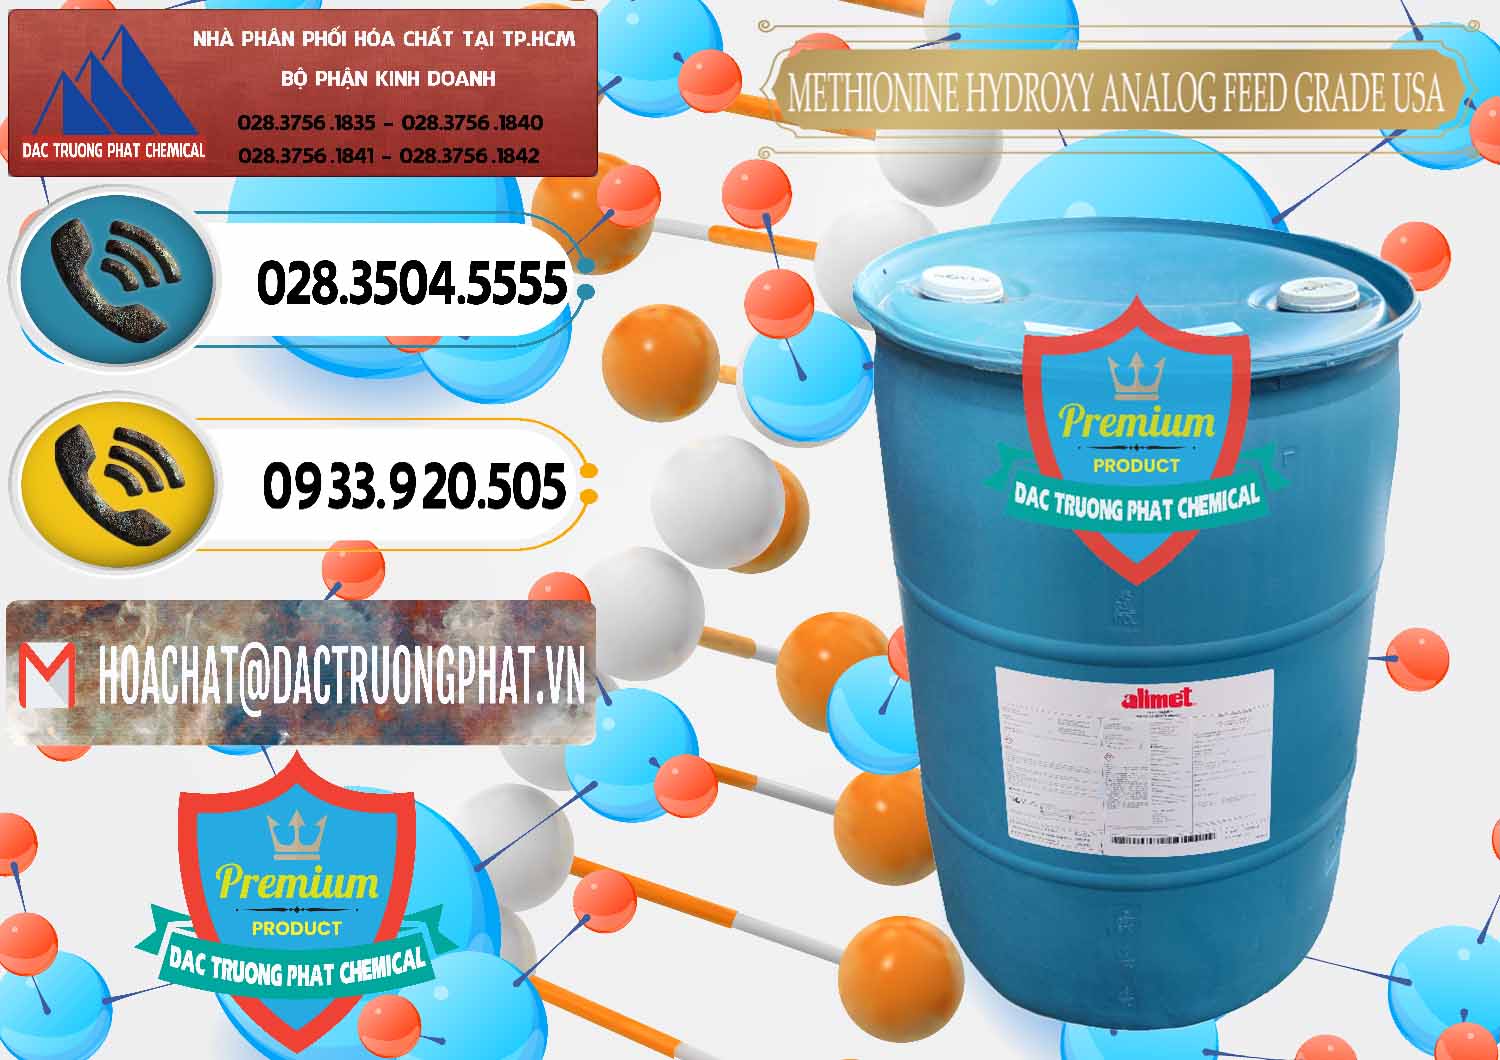 Nơi bán & cung ứng Methionine Nước - Dạng Lỏng Novus Alimet Mỹ USA - 0316 - Nhập khẩu - cung cấp hóa chất tại TP.HCM - hoachatdetnhuom.vn